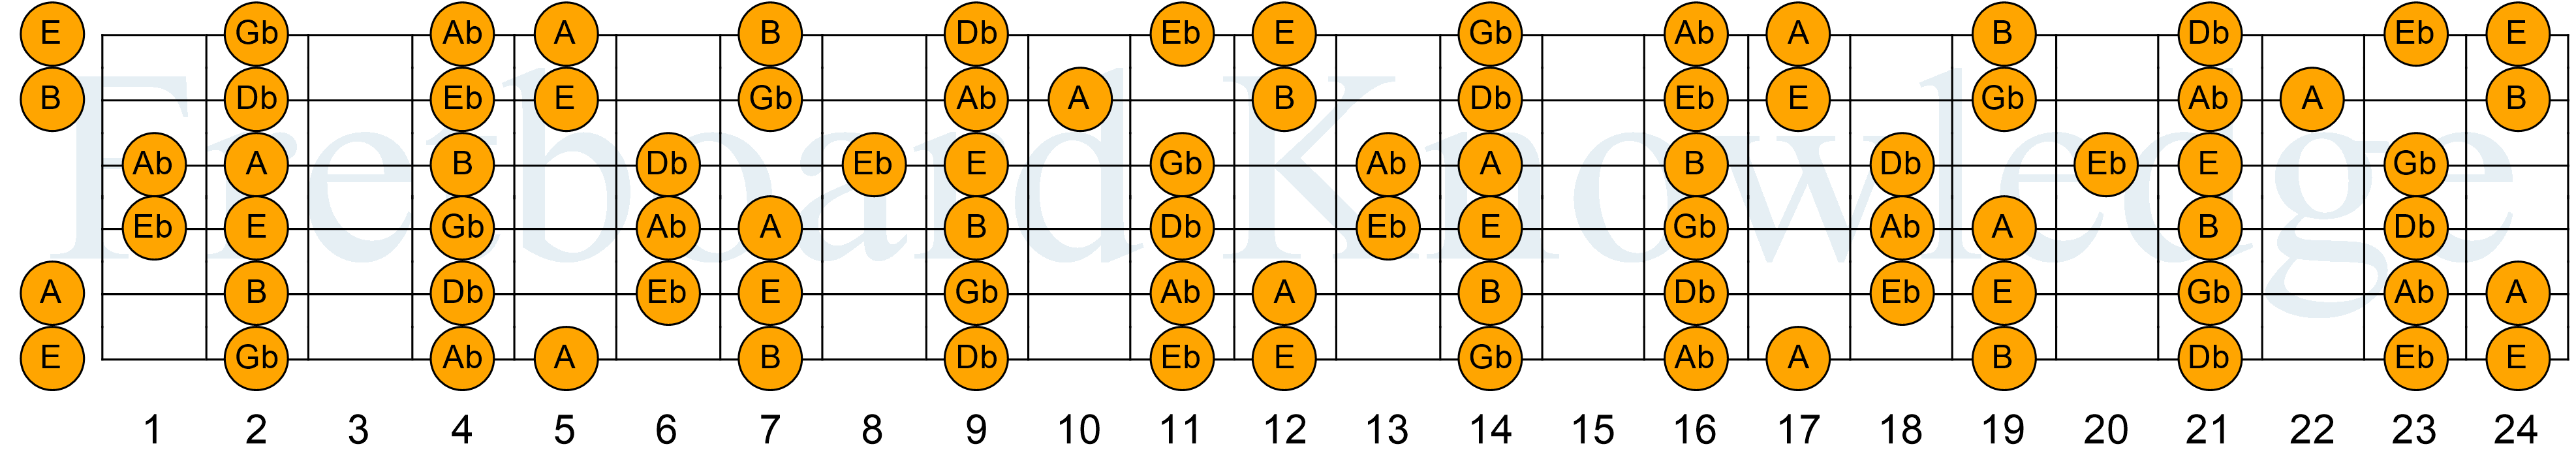 The E Major Scale Guitar Fretboard Diagram